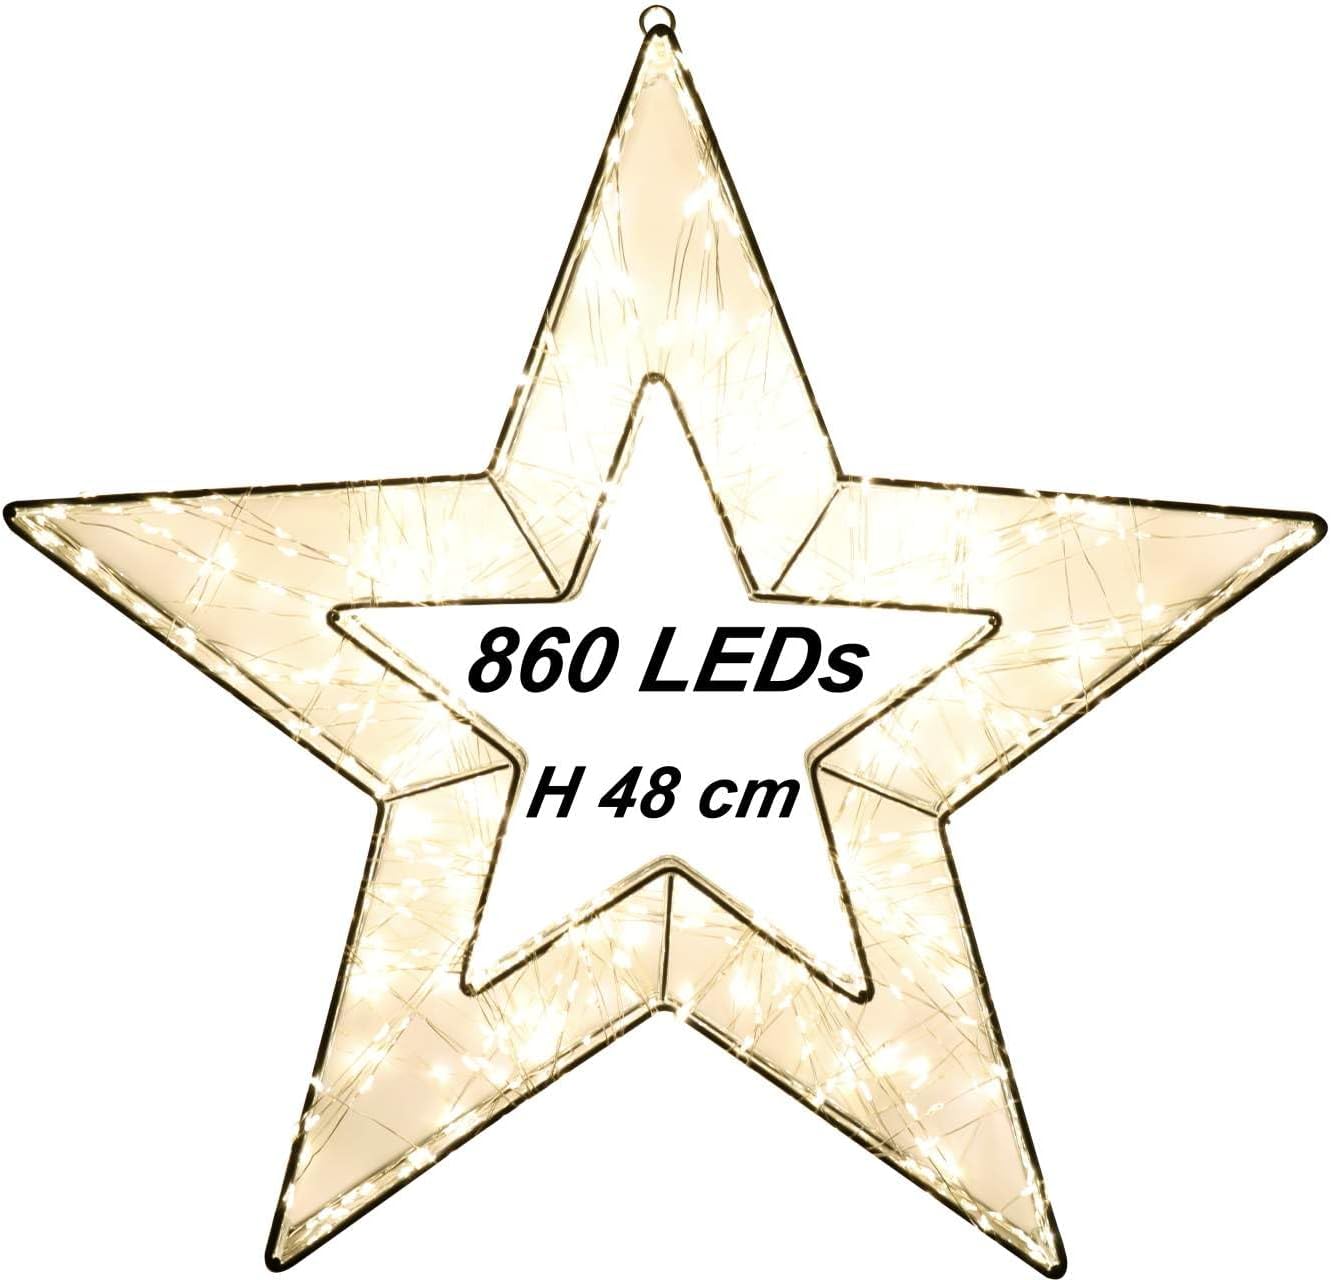 LED Licht Stern auf Drahtgeflecht Leuchtstern 860 LED und Timer